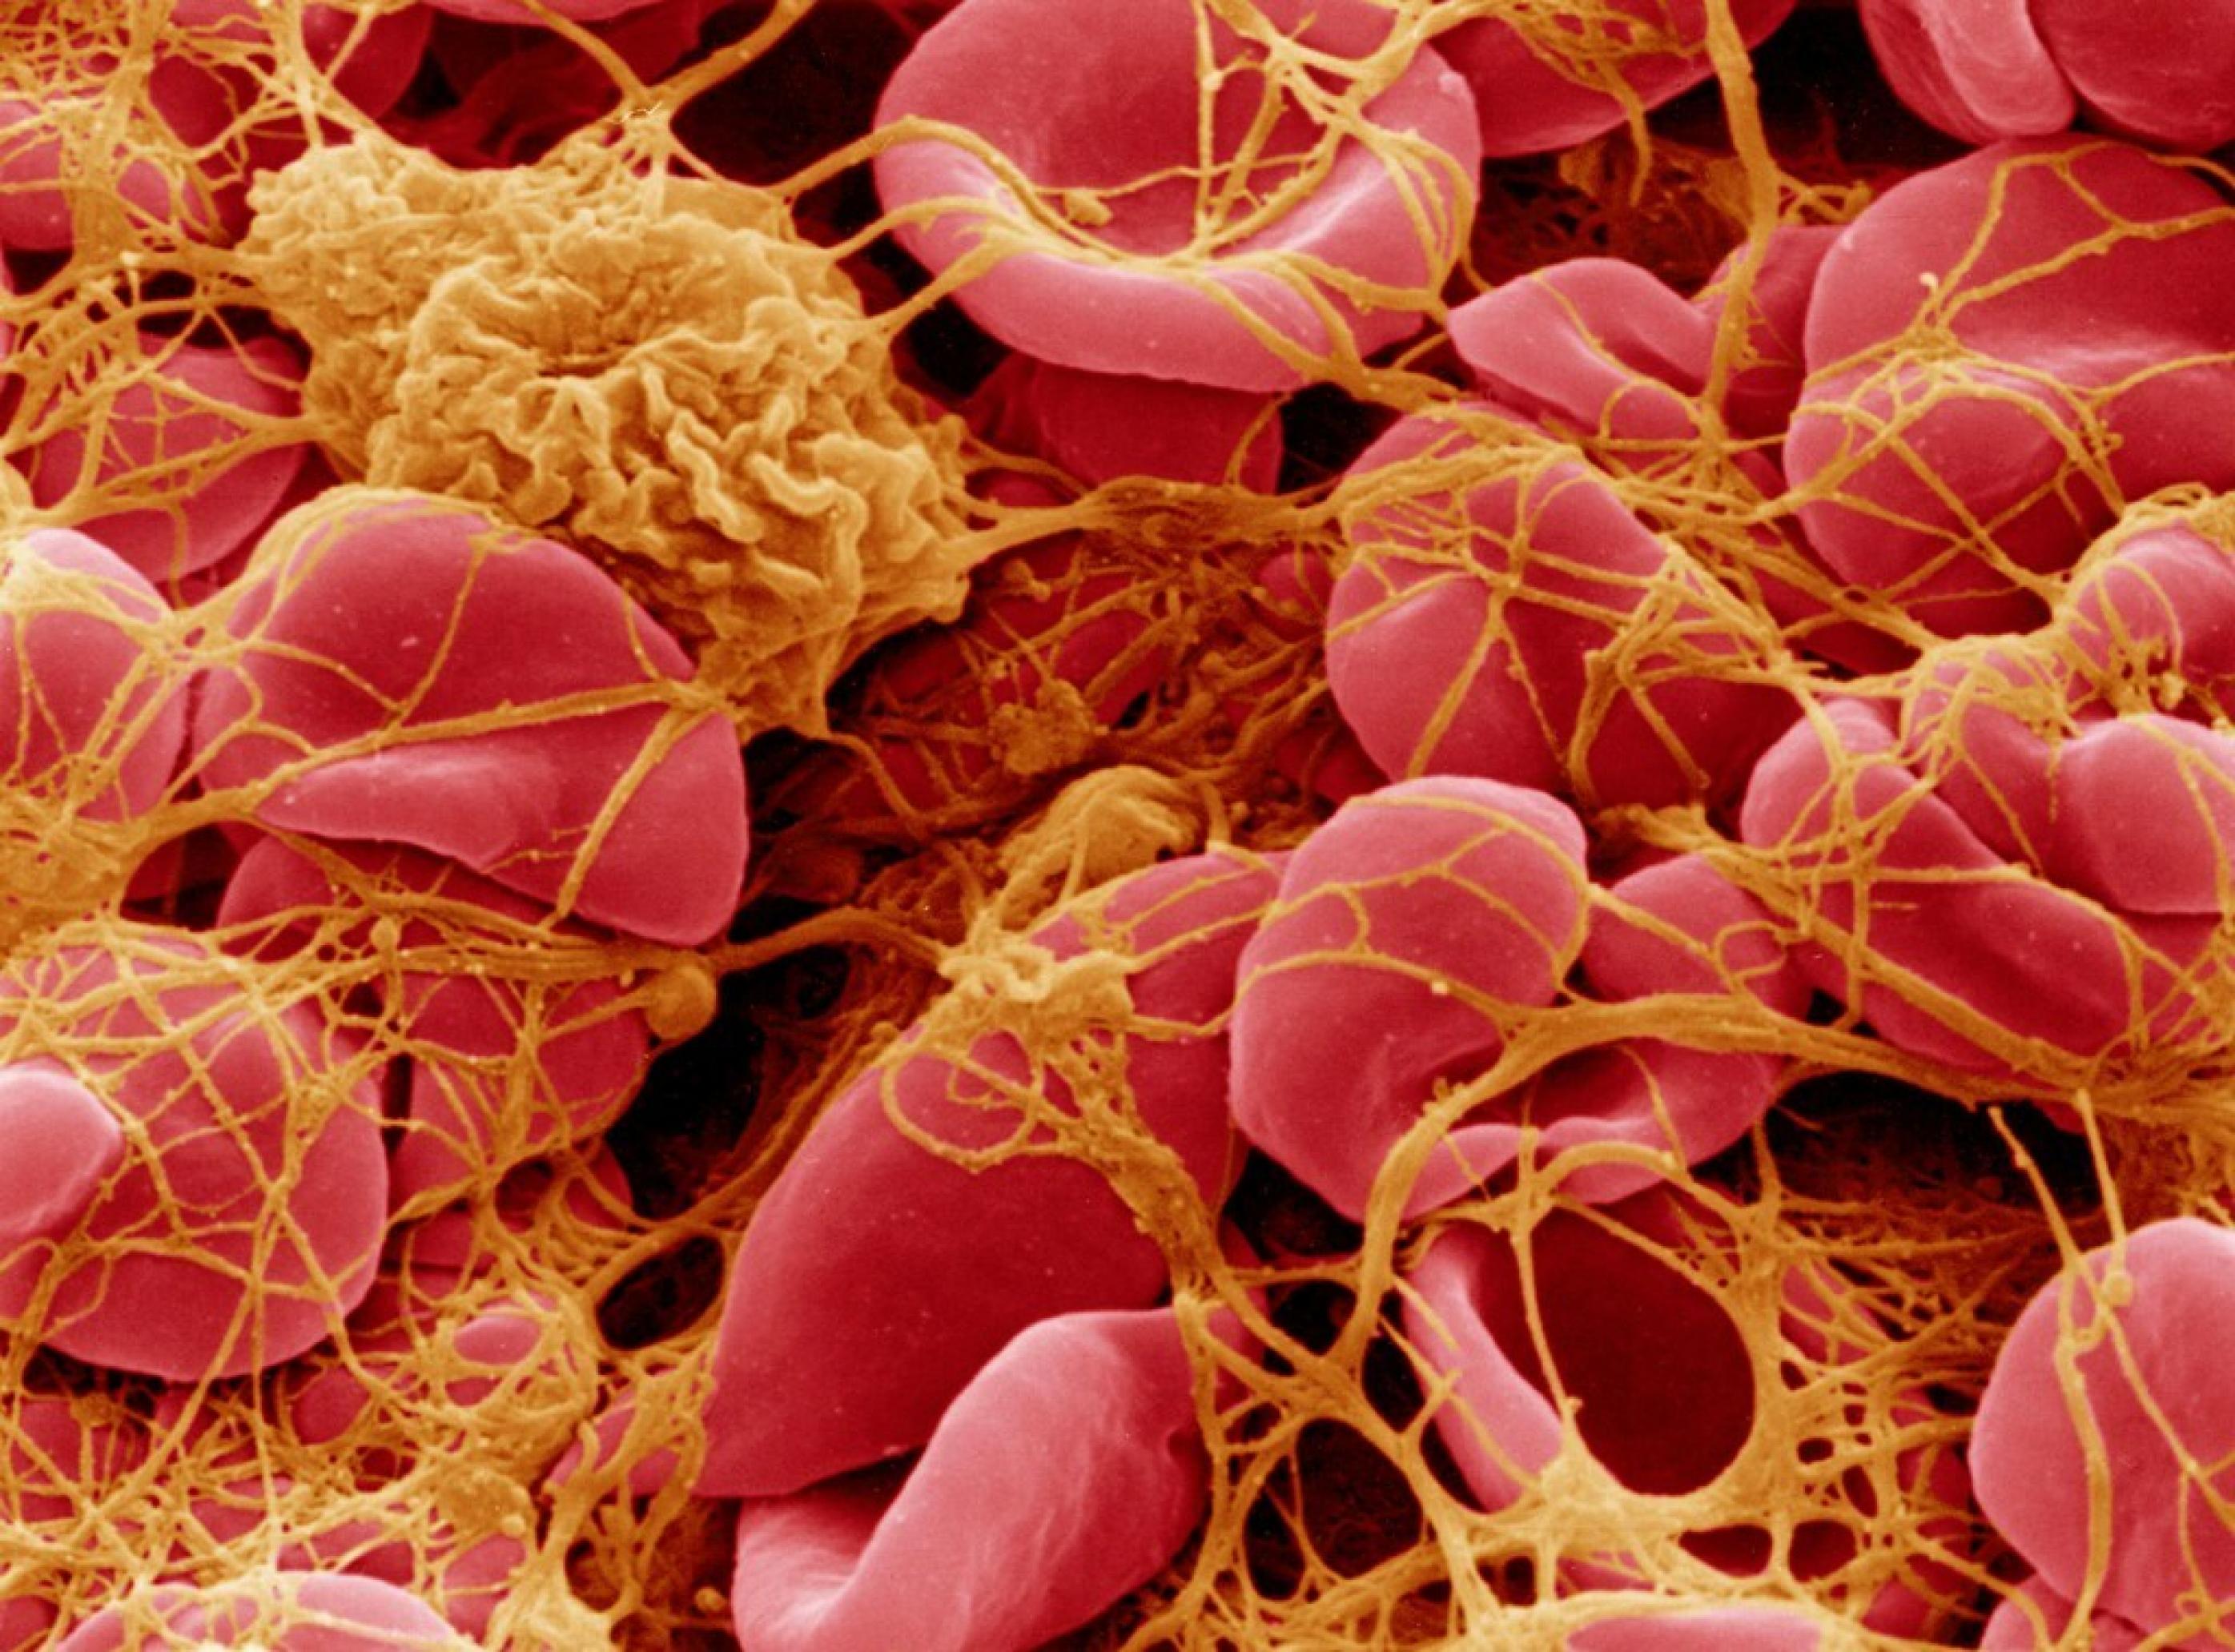 Eine elektronenmikroskopische Aufnahme von roten Blutzellen, die durch lange Fibrinfäden, welche von Thrombozyten freigesetzt werden, verklumpt sind.